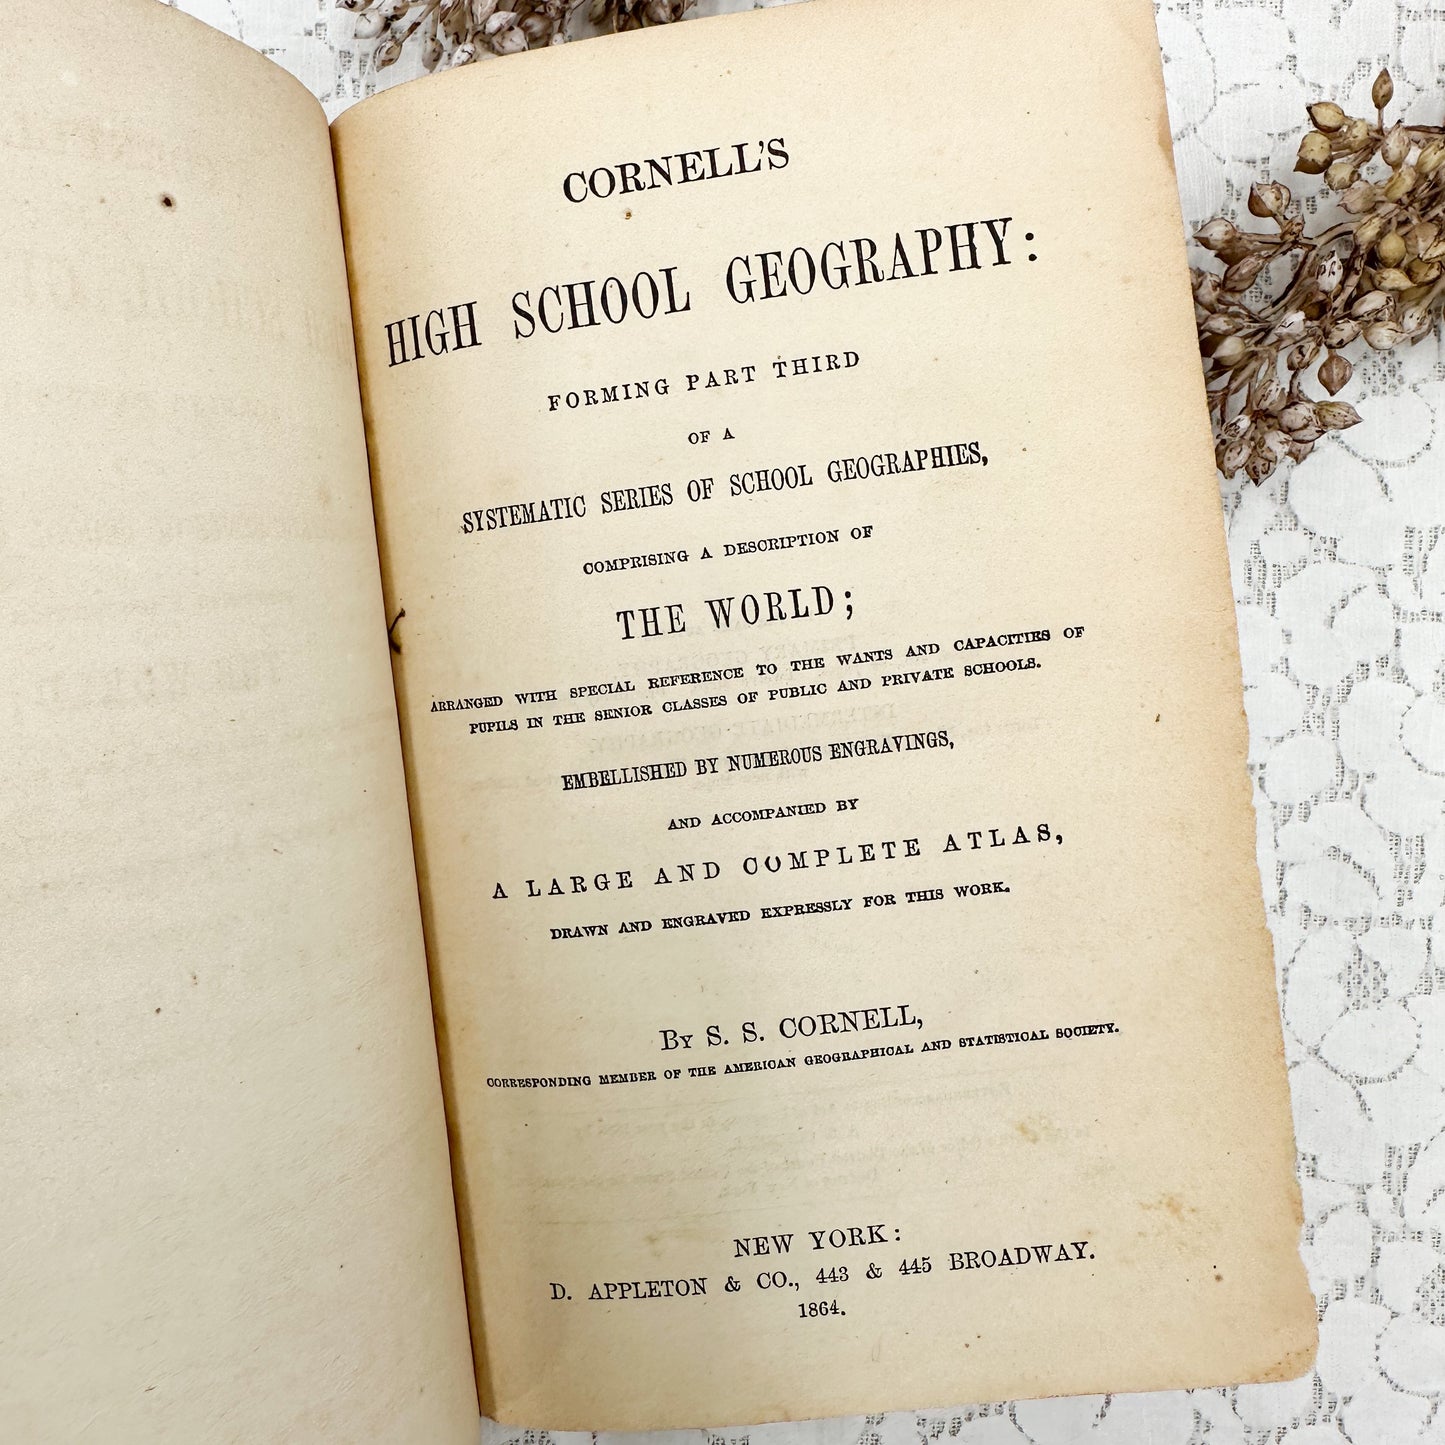 High School Geography- 1856